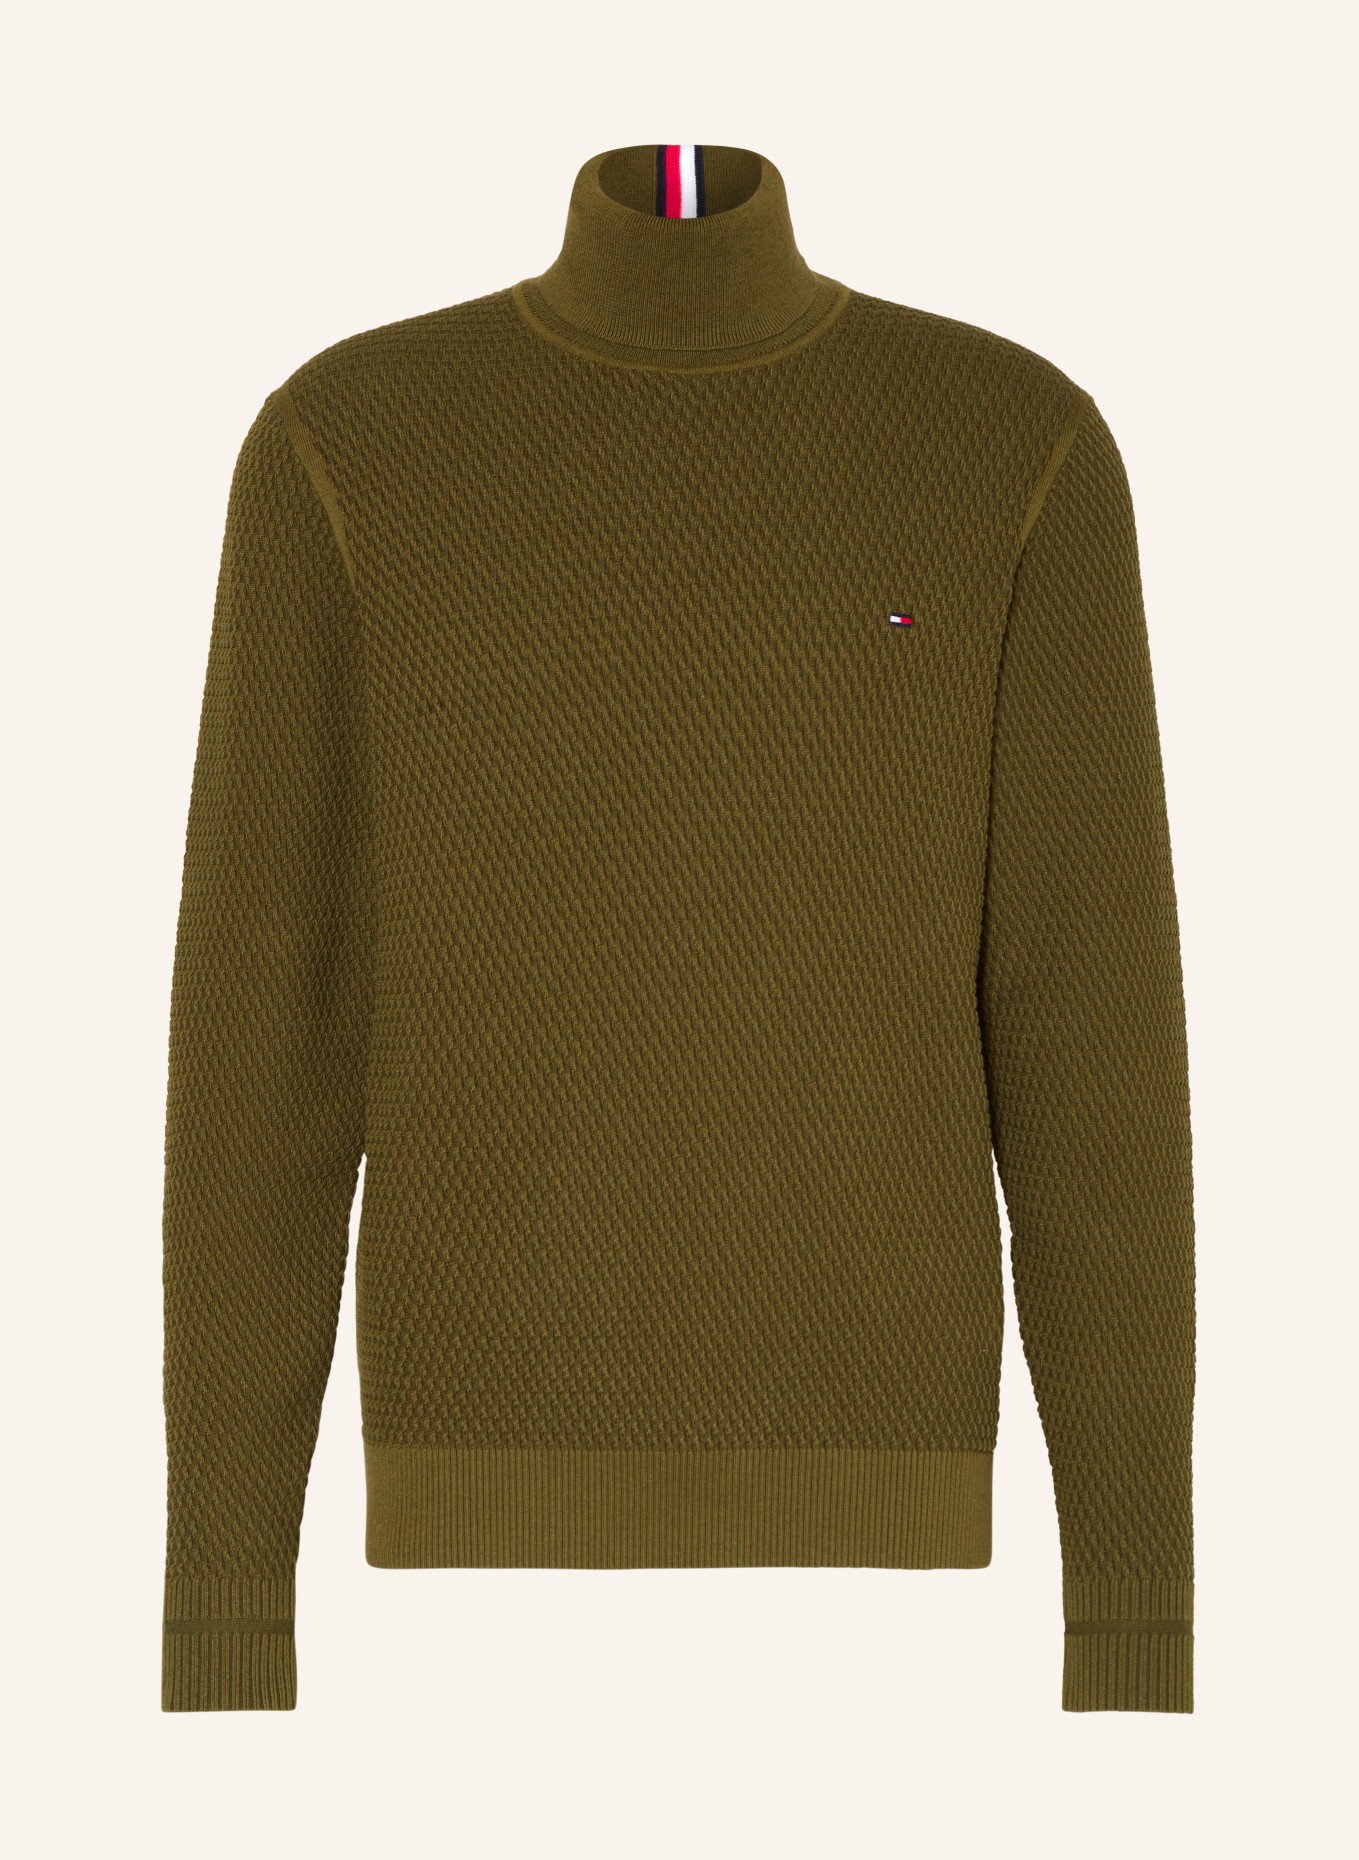 TOMMY HILFIGER Turtleneck sweater, Color: OLIVE (Image 1)